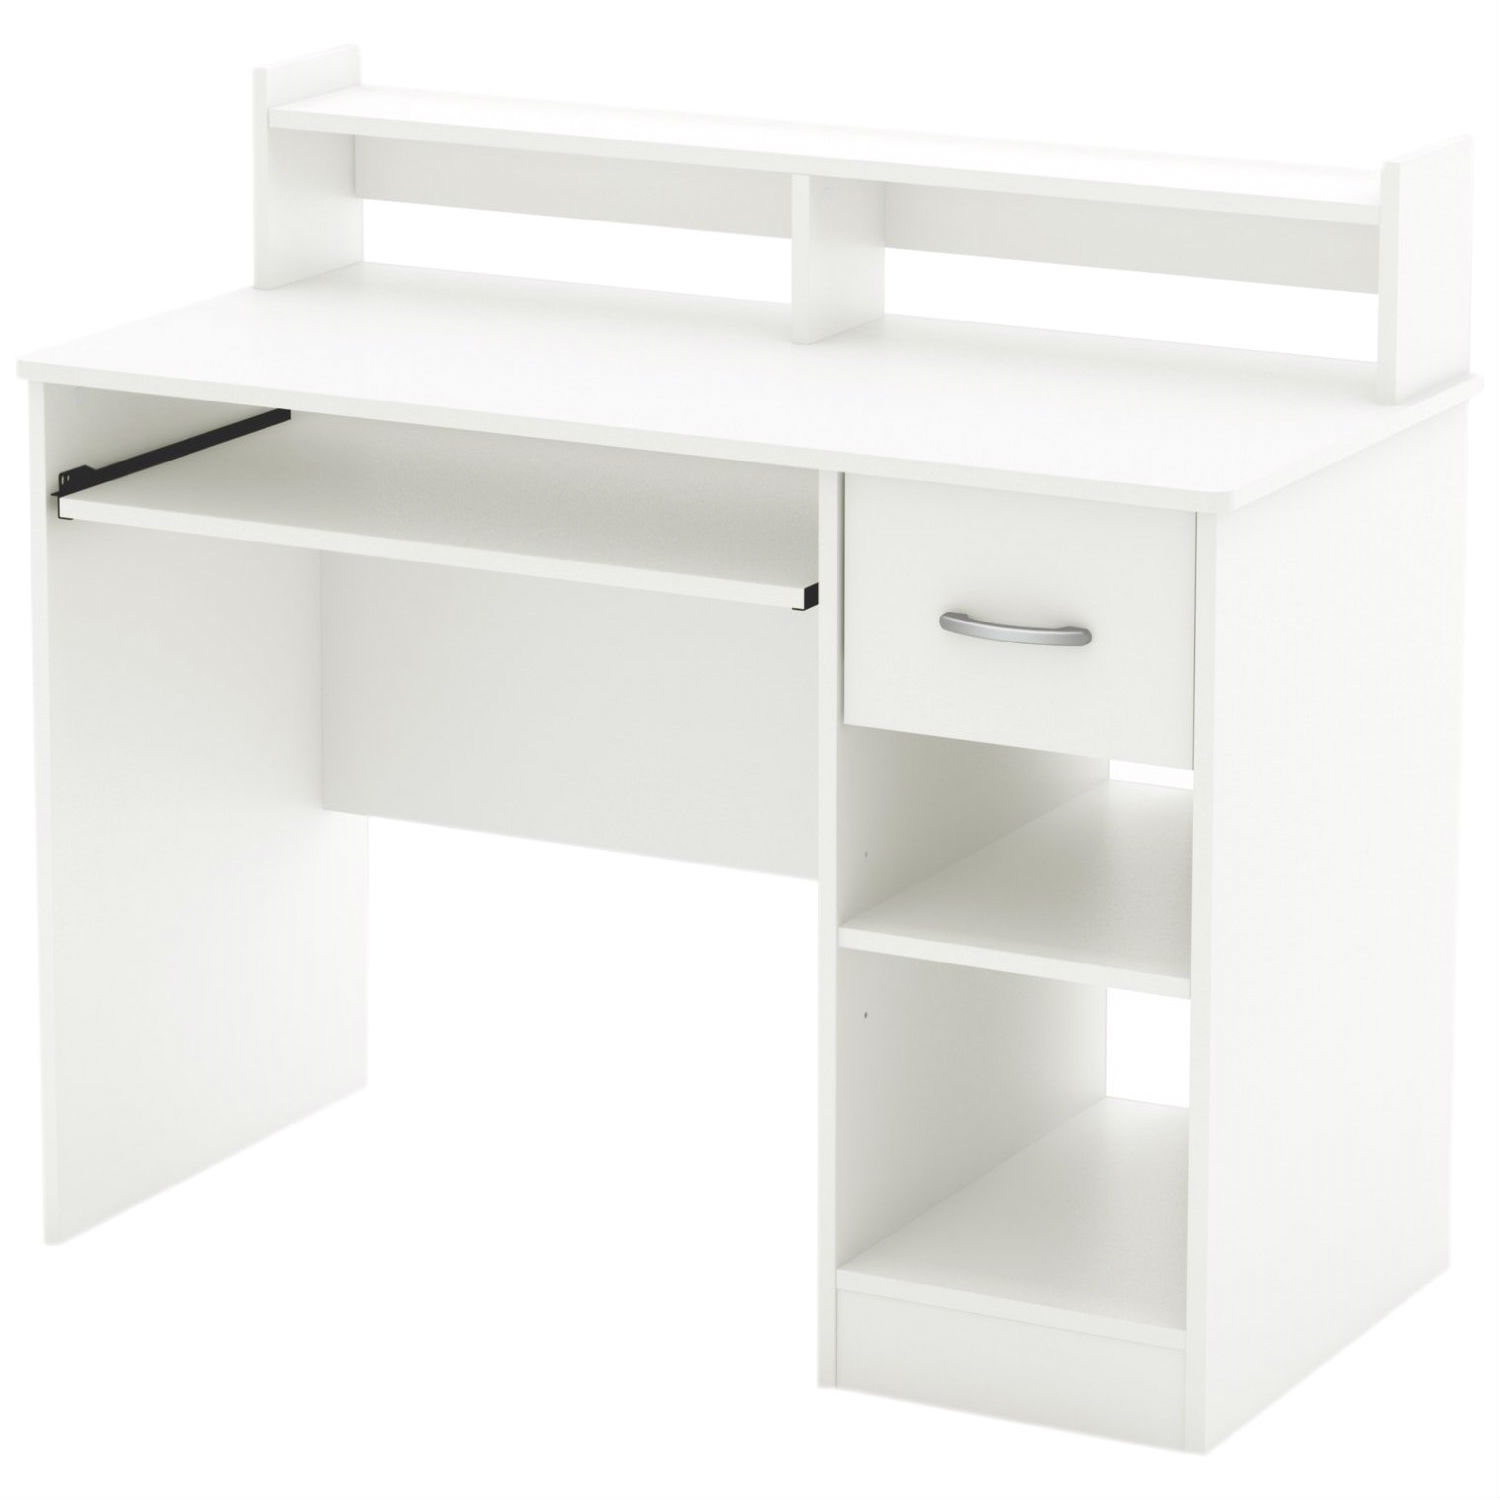 Corner desk 4 shelves white furniture bedroom desk modern